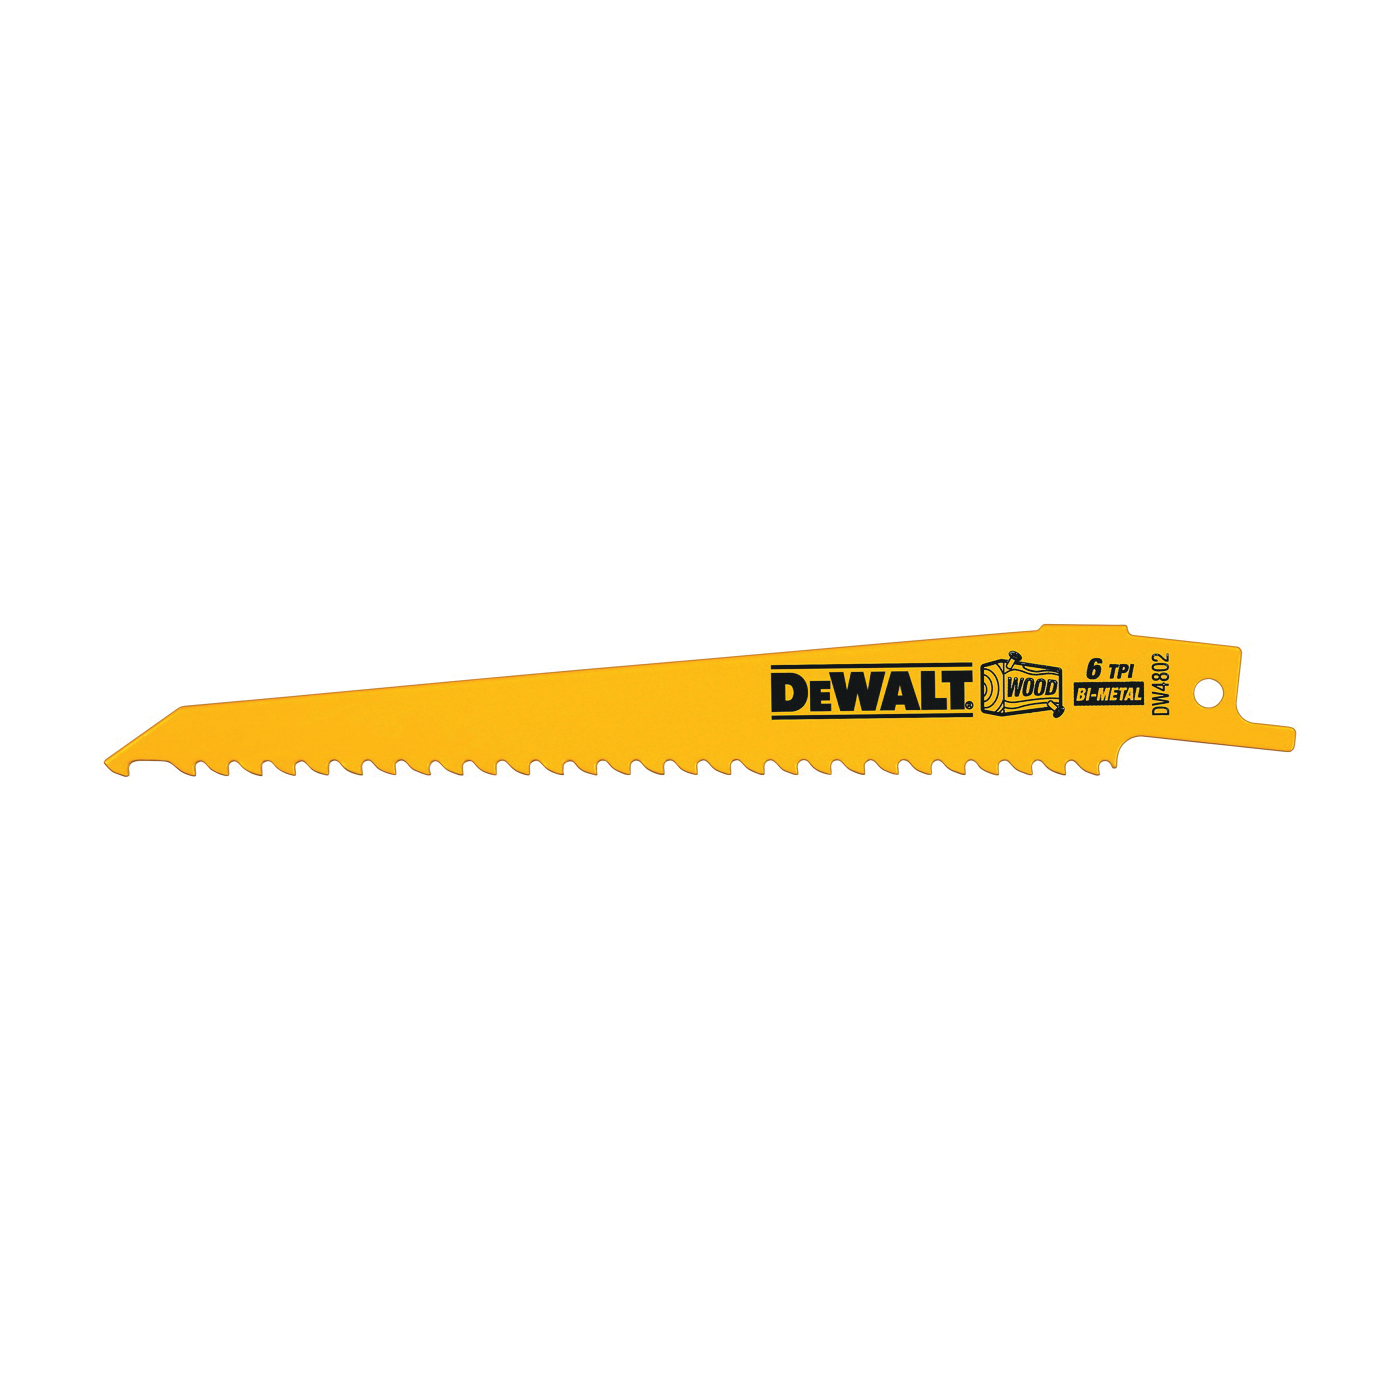 DeWALT DW4802 Reciprocating Saw Blade, 3/4 in W, 6 in L, 6 TPI